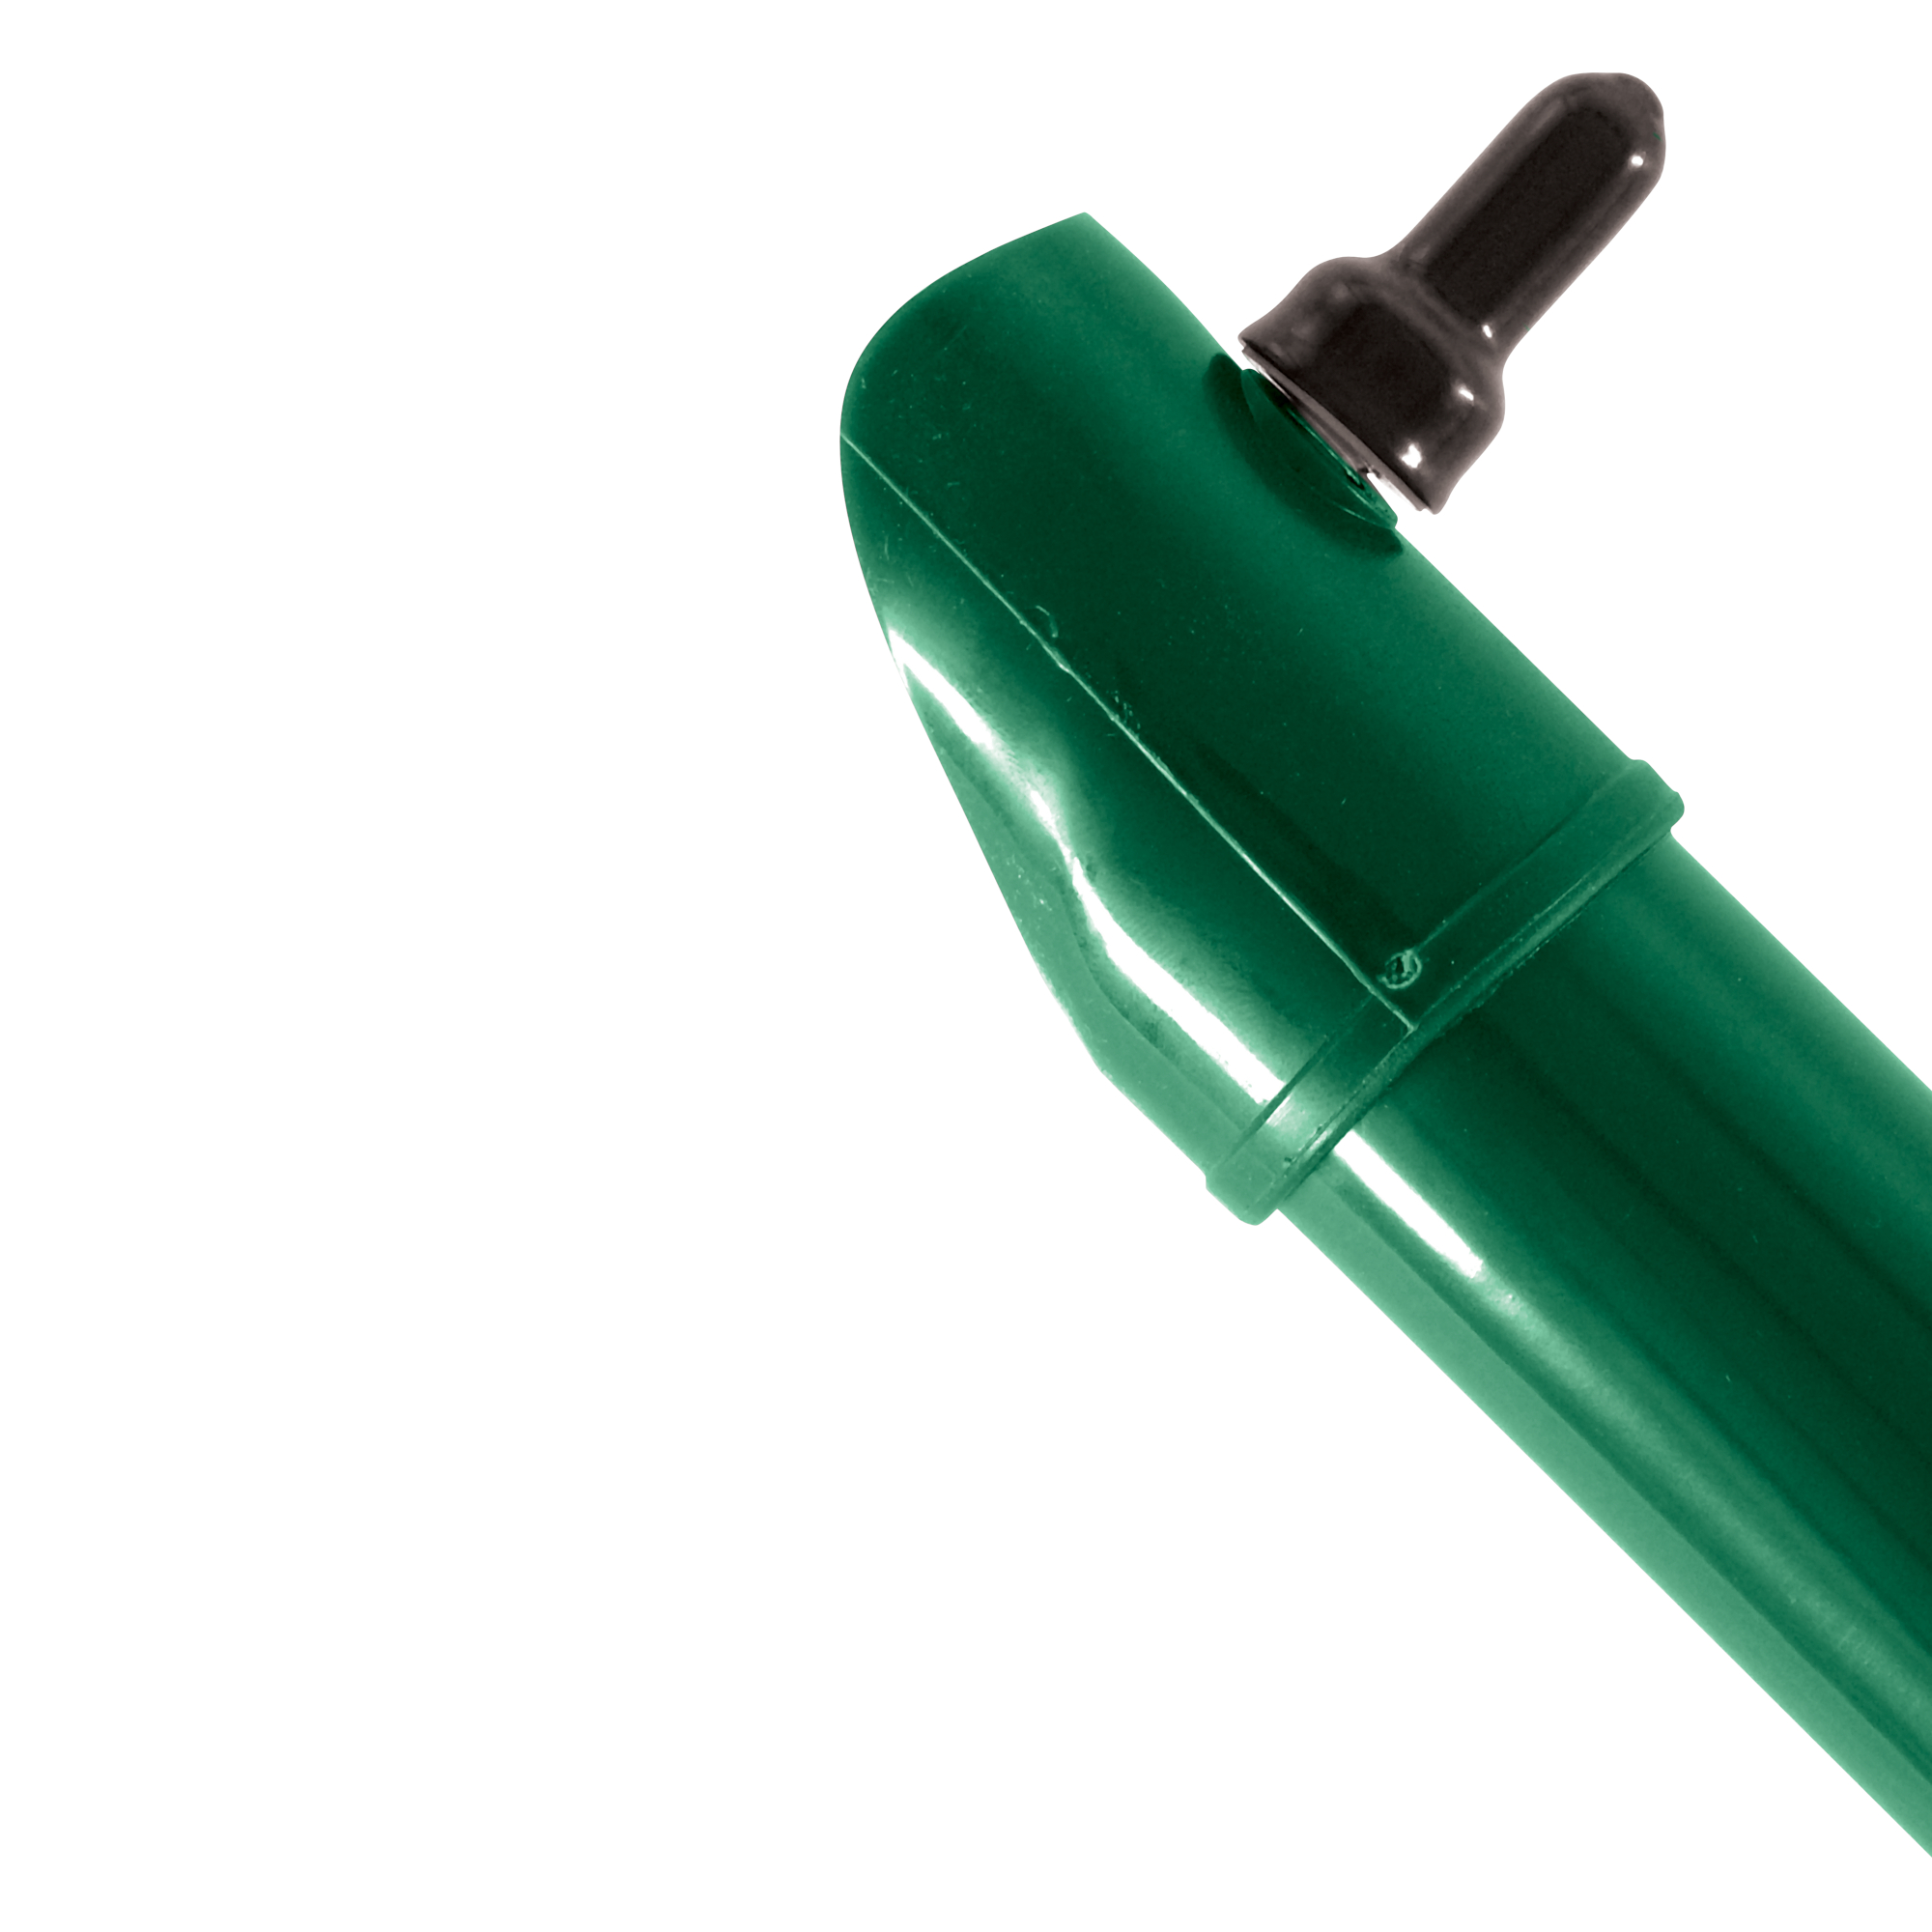 Vzpěra kulatá Ideal Zn + PVC zelená průměr 38 mm délka 2,7 m